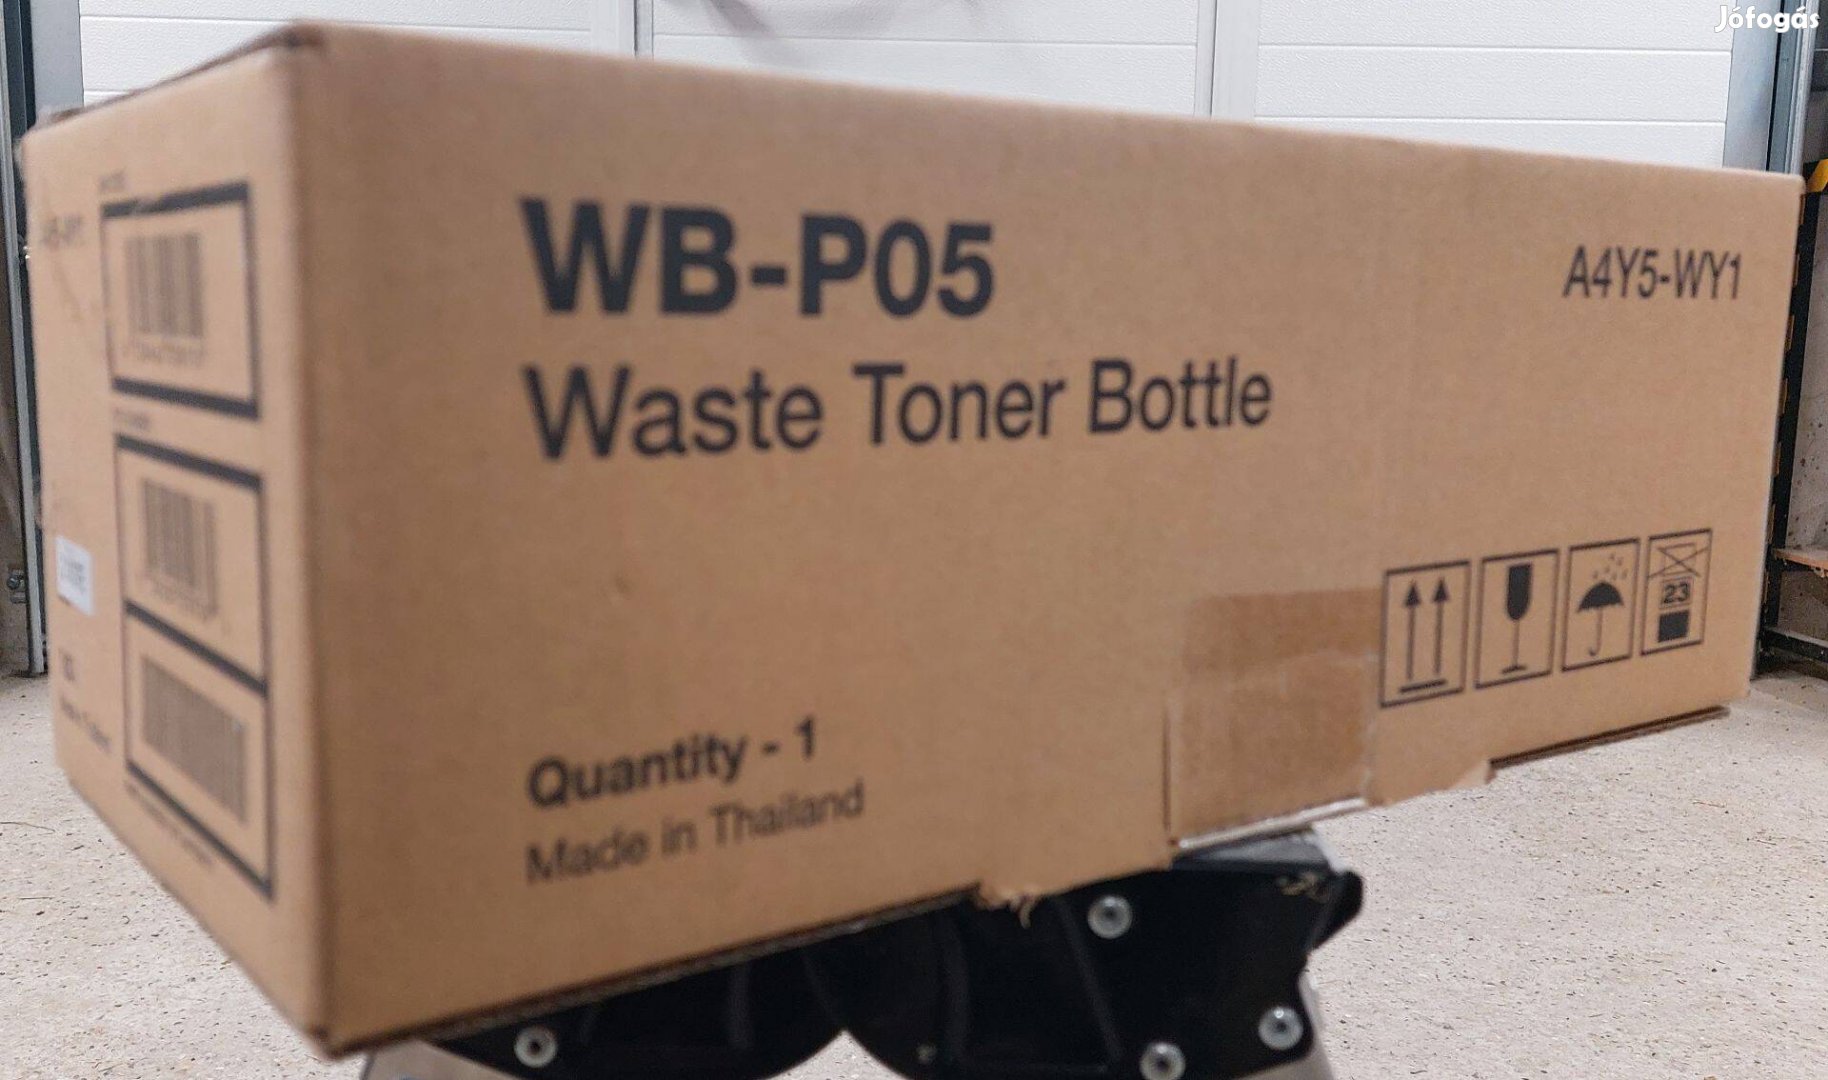 Konica Minolta (A4Y5WY1) WBP-05 cikkszámú Waste Toner